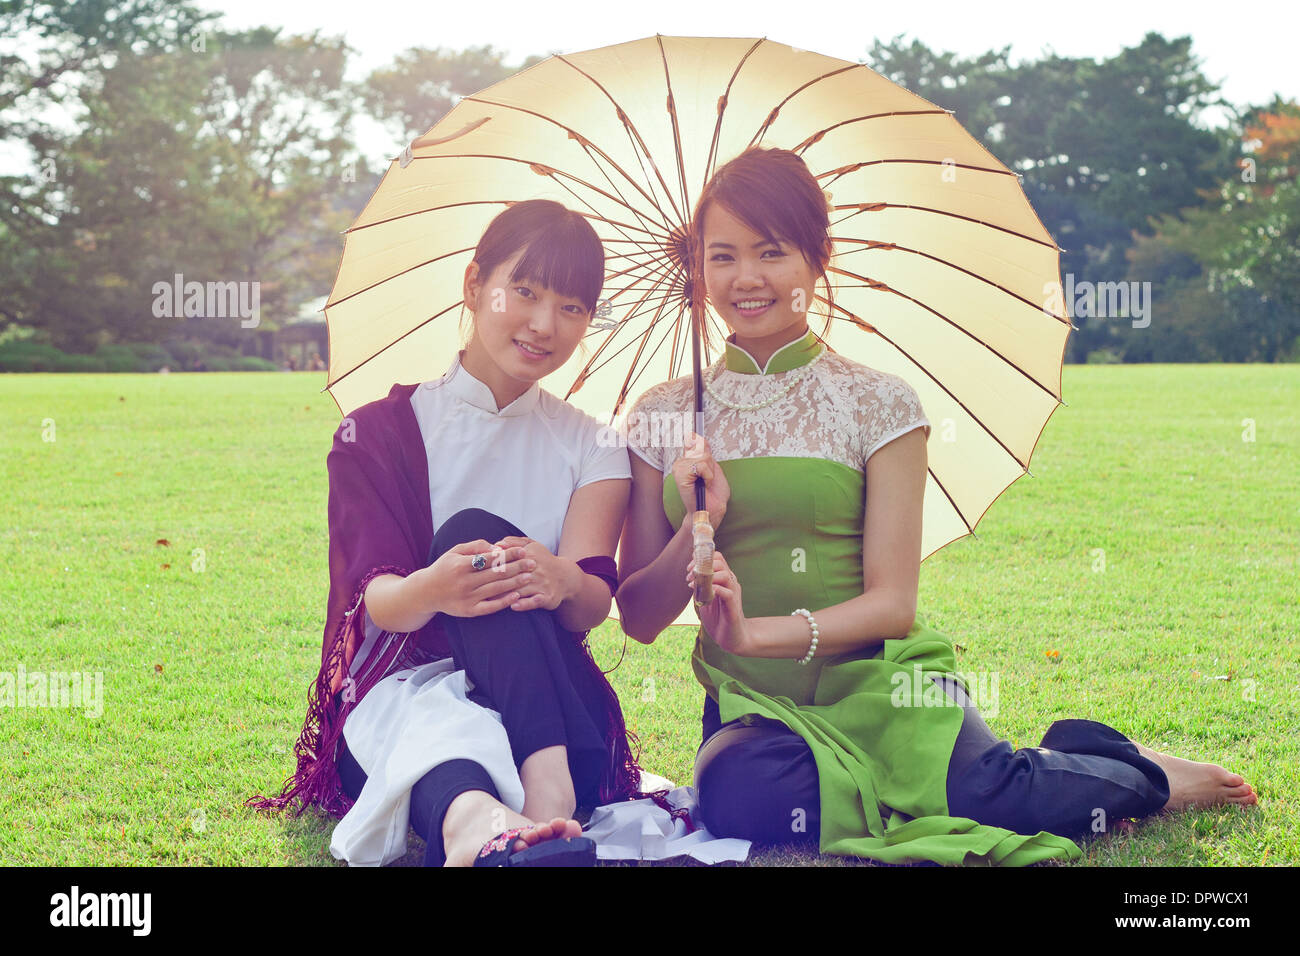 Junge Frauen halten Sonnenschirme in vietnamesischen Tracht lächelnd in die Kamera kniend Stockfoto